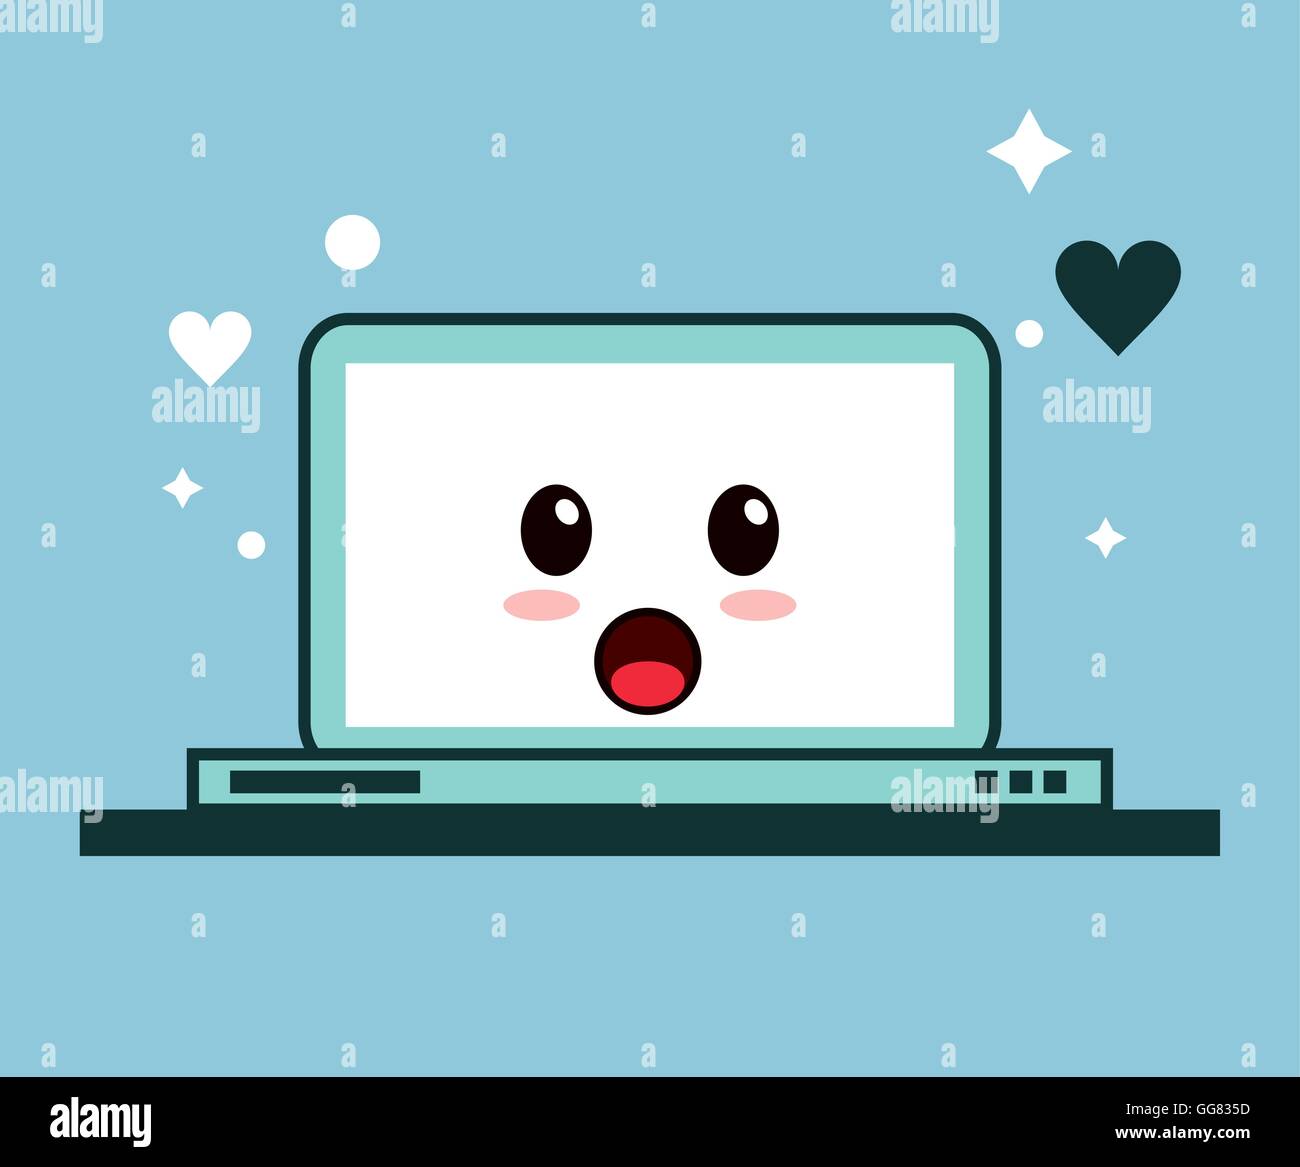 Laptop kawaii cartoon funny cute icon. Vector graphic Stock Vector ...